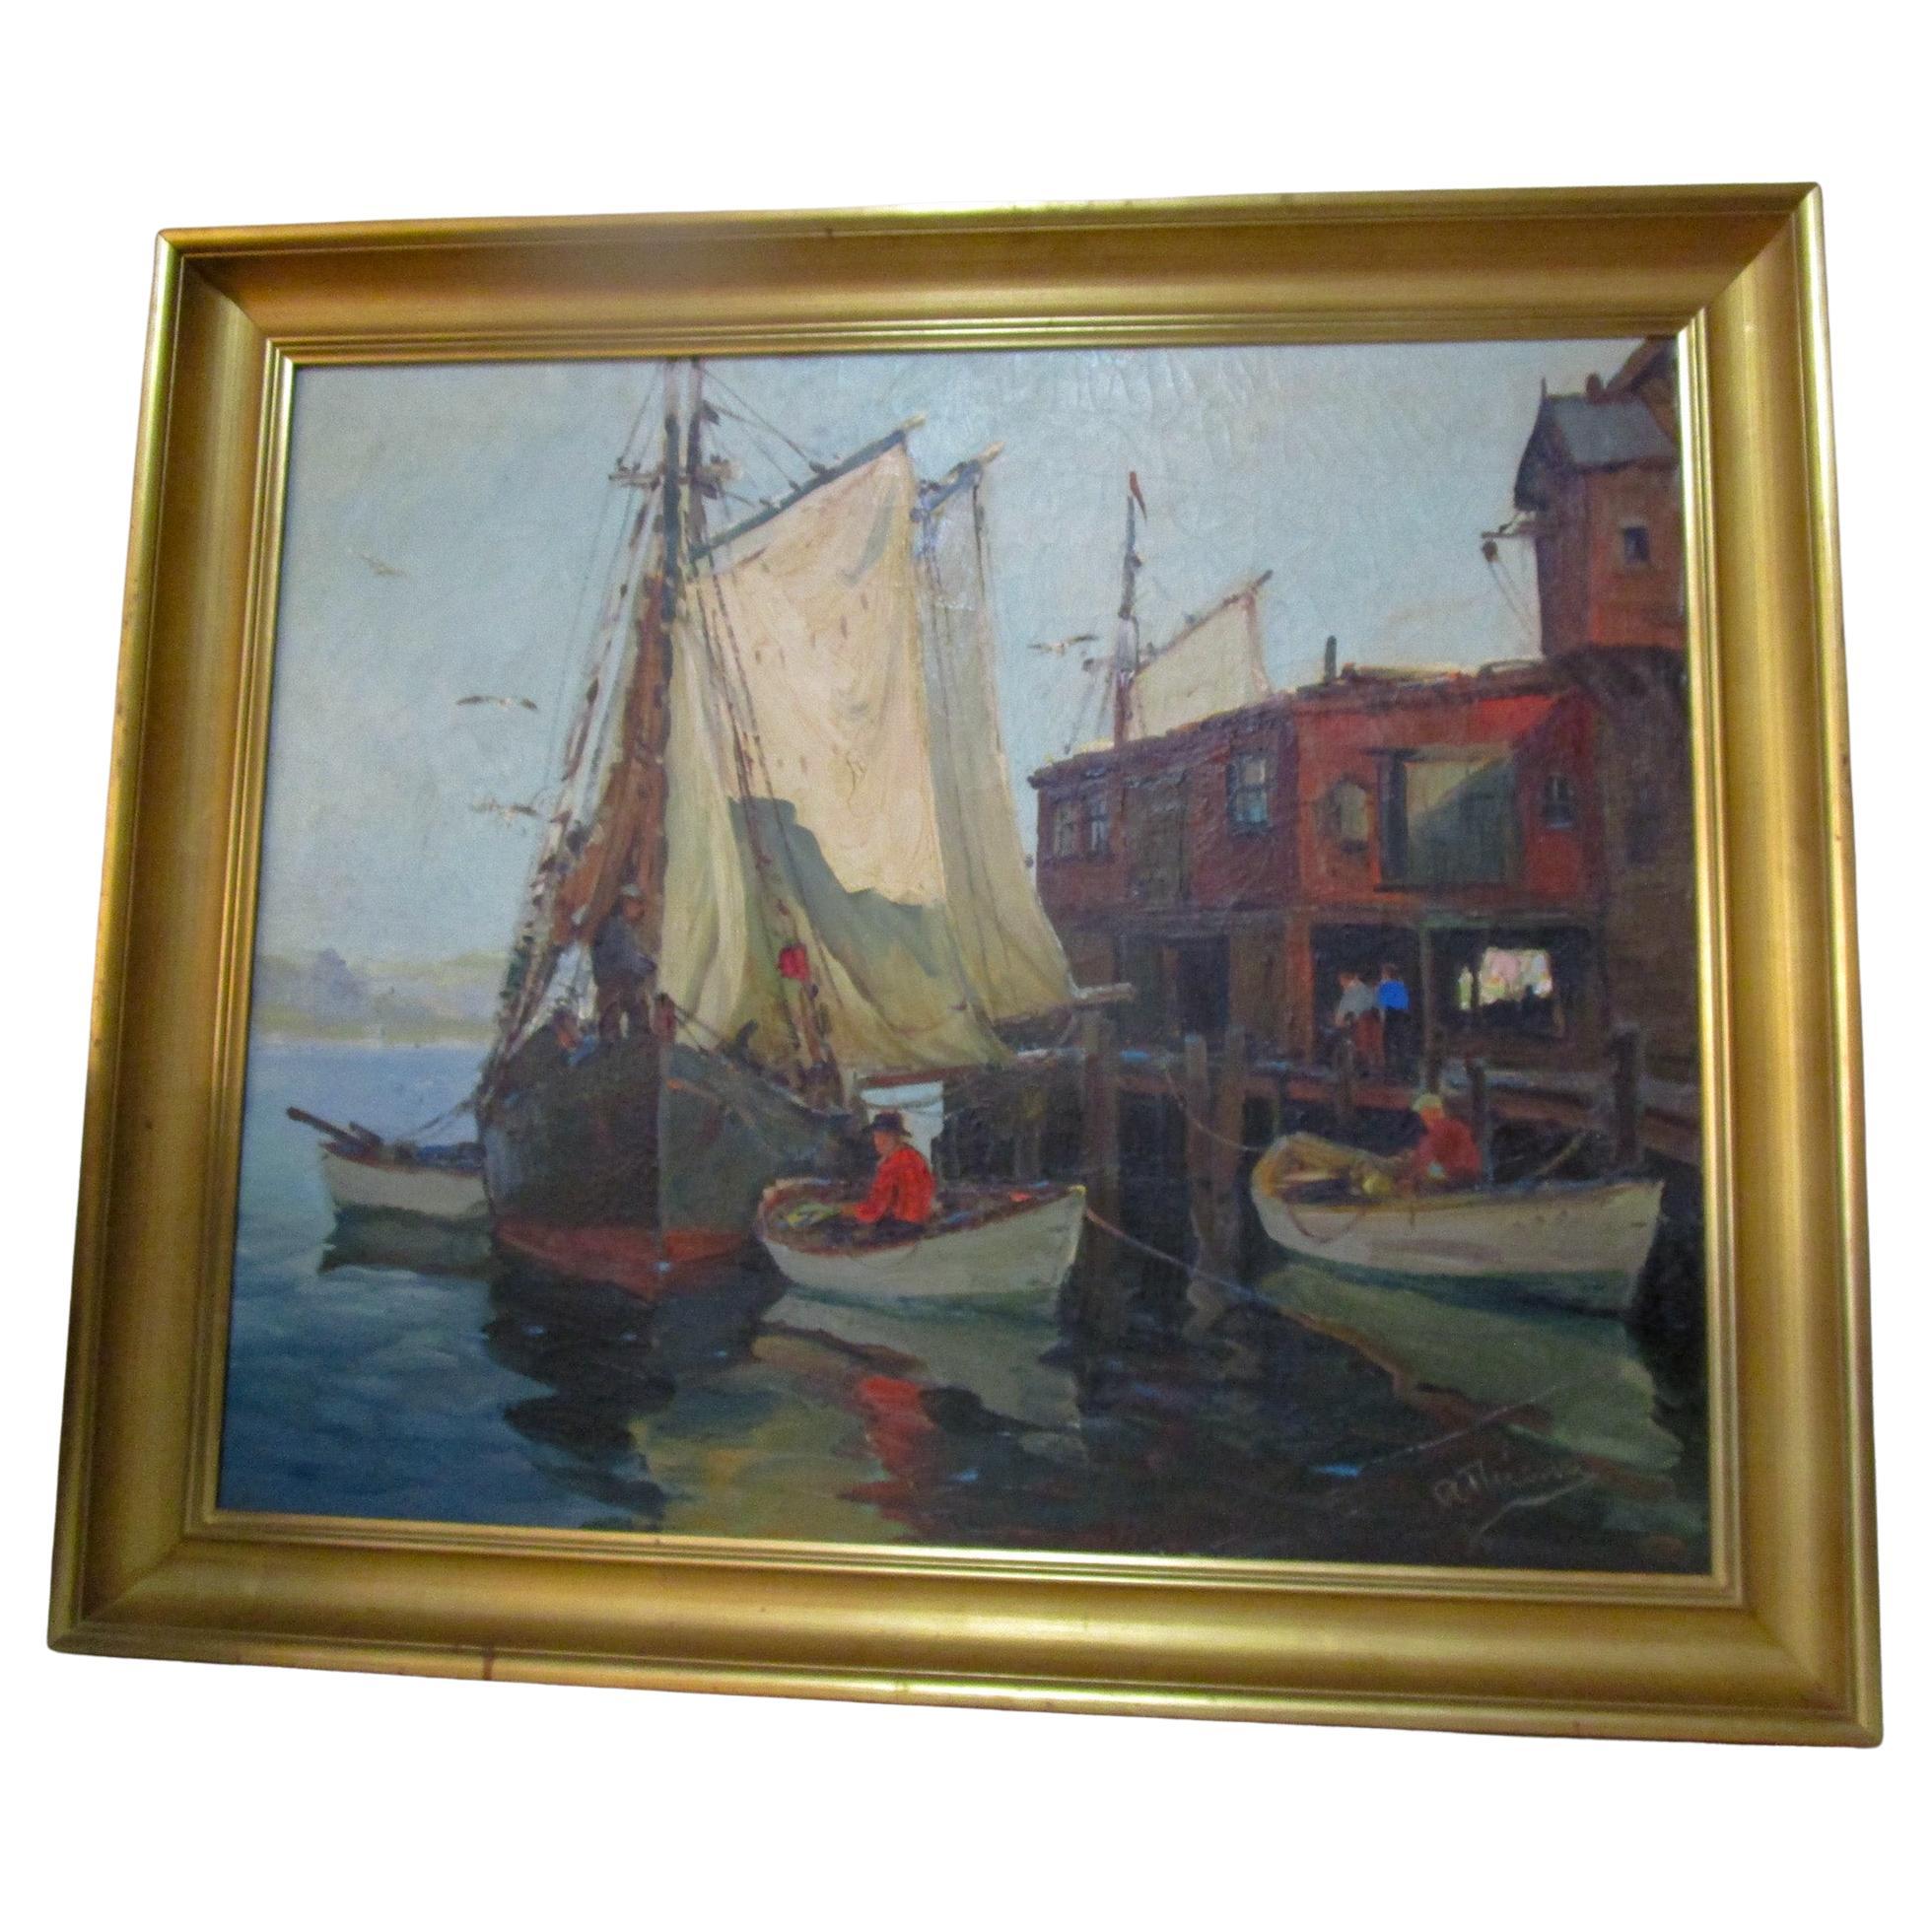 Peinture impressionniste américaine de scène portuaire de la Nouvelle-Angleterre intitulée "Sails Up" par A. Thieme